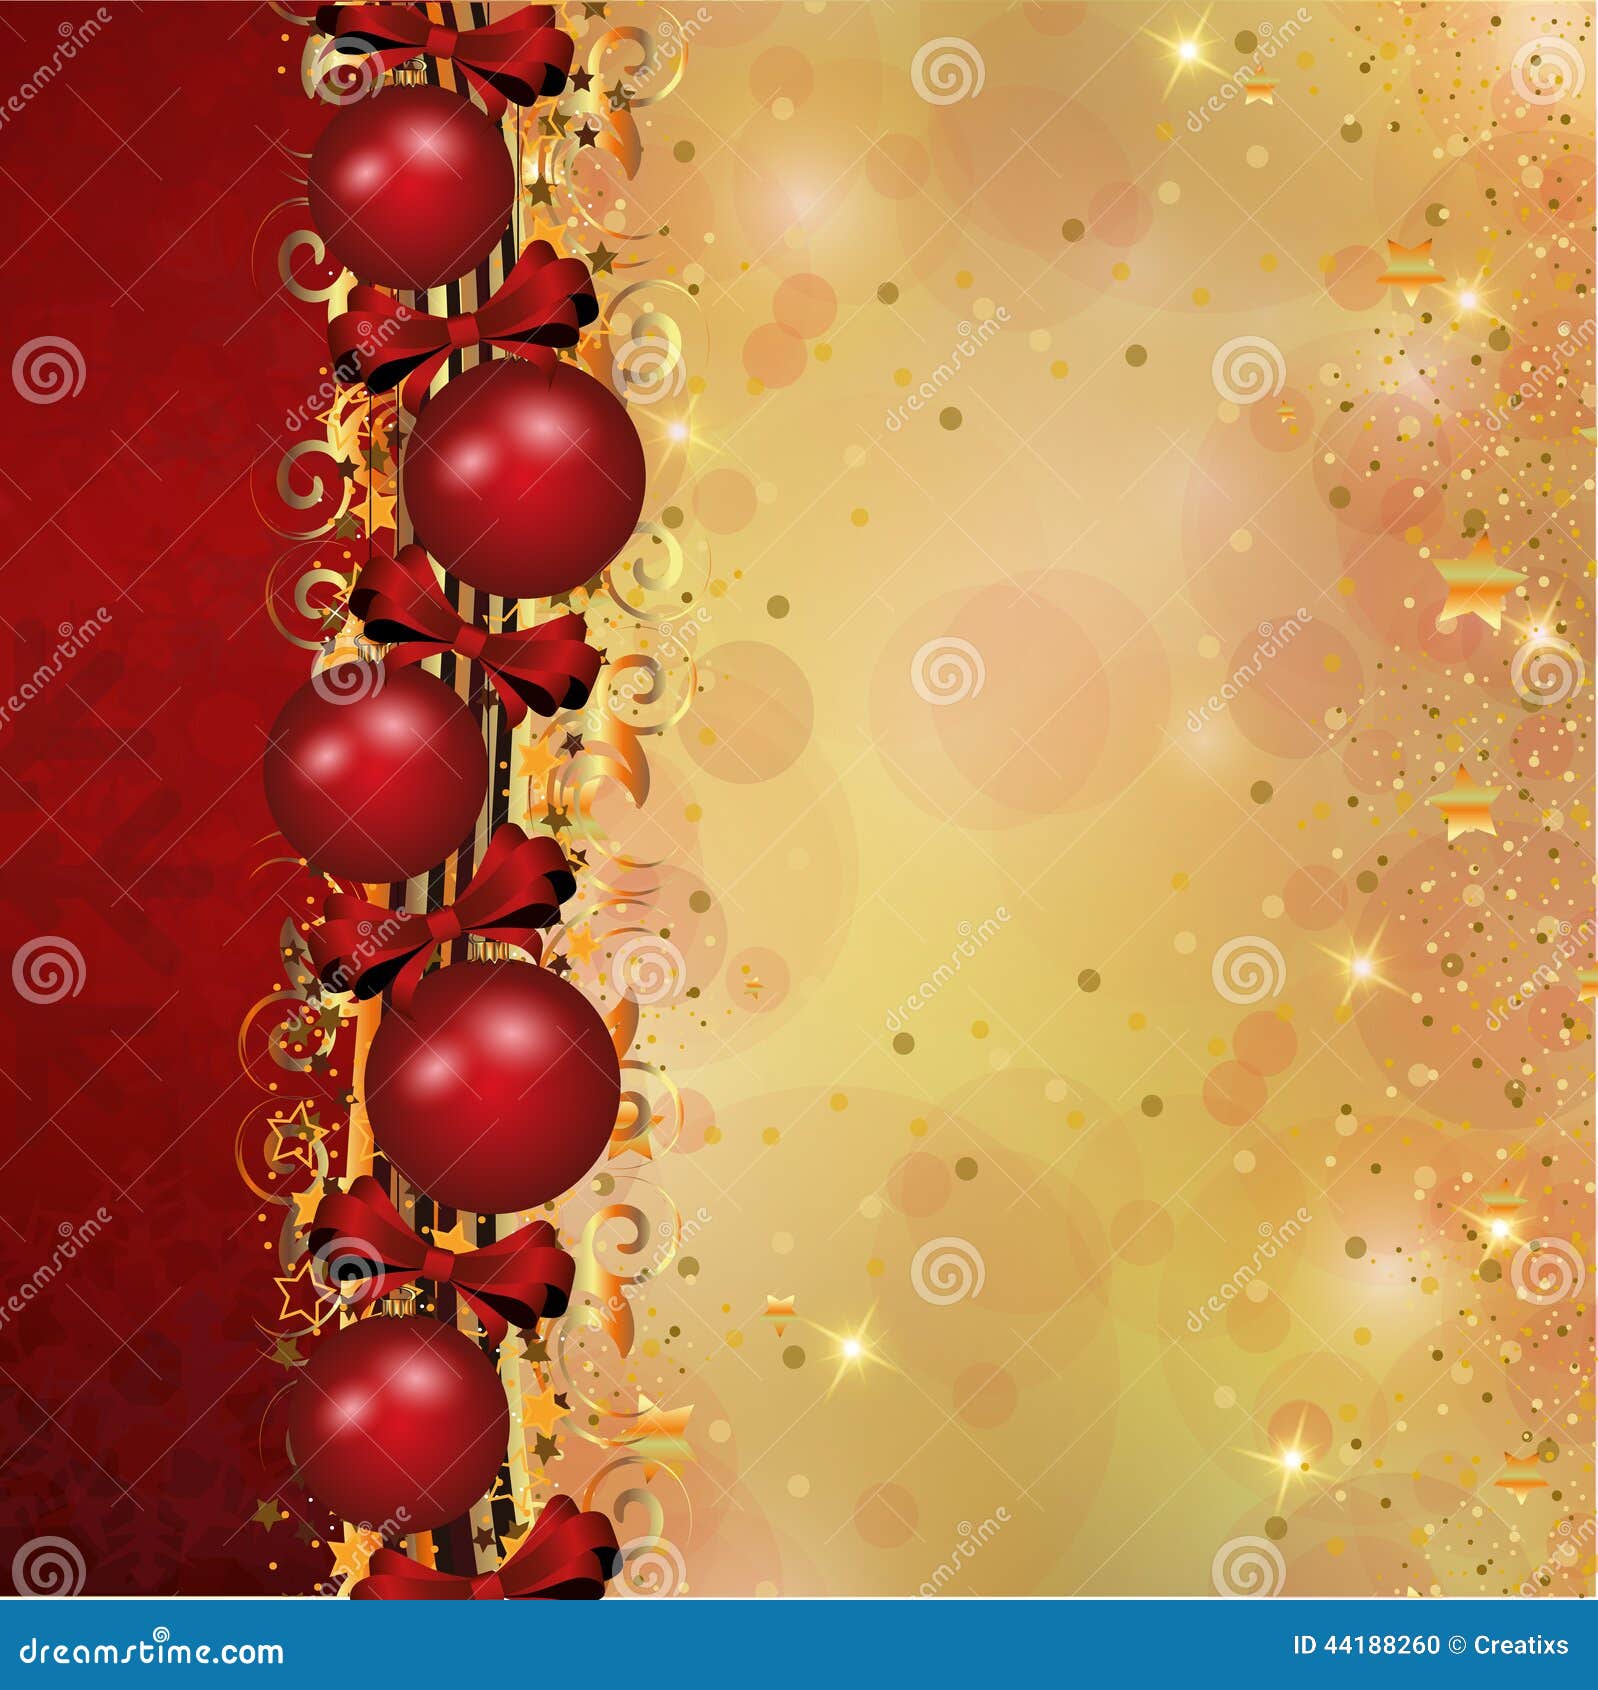 Sfondi Natalizi Verticali.Decorazione Di Natale Nel Rosso E Nelle Bande Dell Oro Illustrazione Di Stock Illustrazione Di Brillare Colorful 44188260